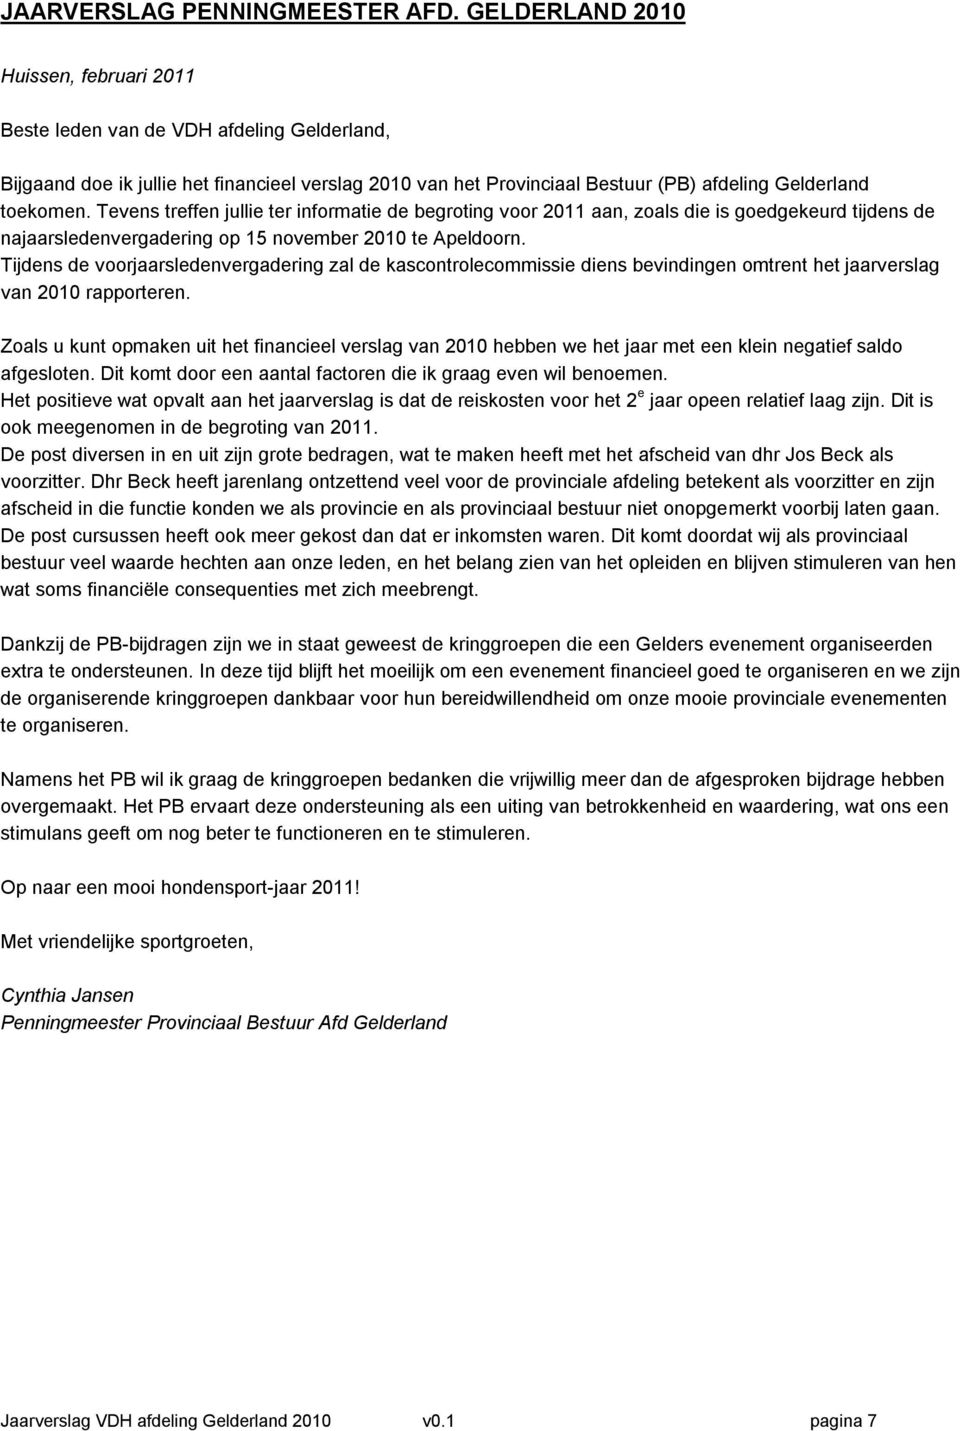 Tevens treffen jullie ter informatie de begroting voor 2011 aan, zoals die is goedgekeurd tijdens de najaarsledenvergadering op 15 november 2010 te Apeldoorn.